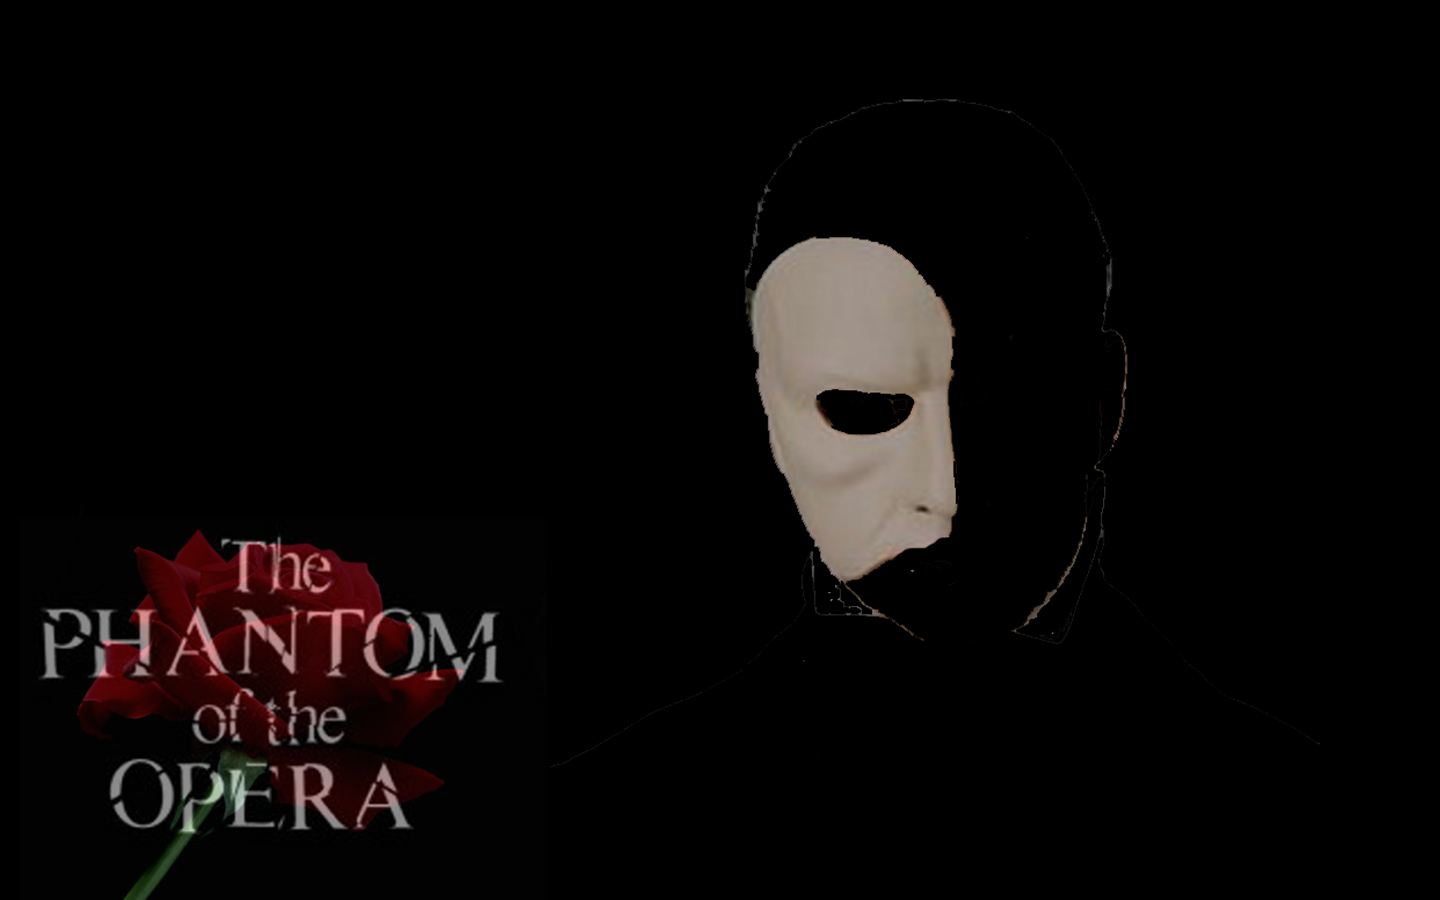 Phantom Of The Opera Wallpaper For Desktop By